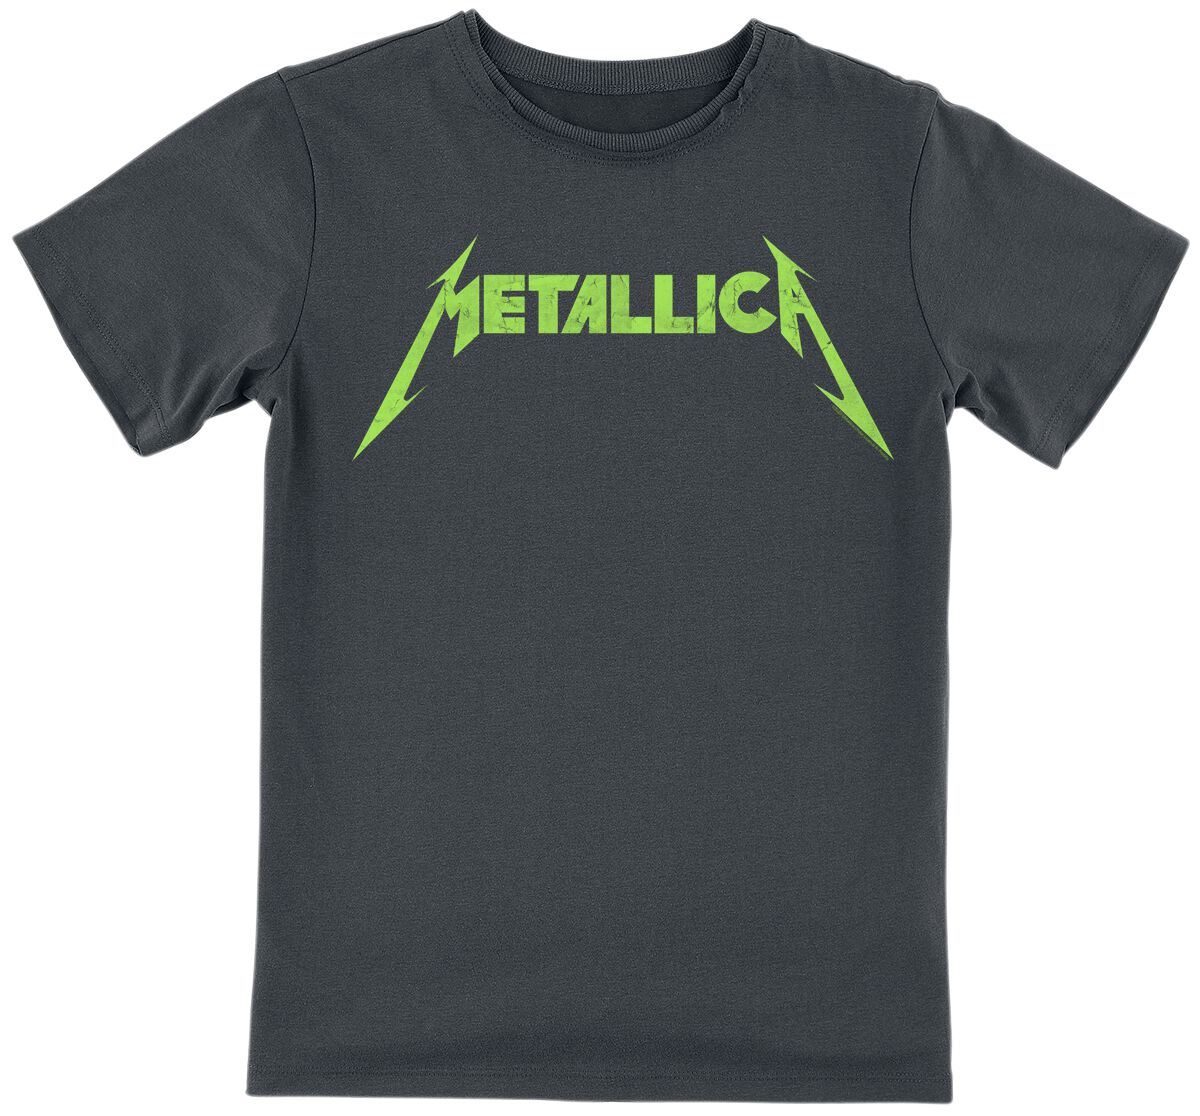 Metallica T-Shirt für Kinder - Amplified Collection - Kids - Neon Logo - für Mädchen & Jungen - charcoal  - Lizenziertes Merchandise!